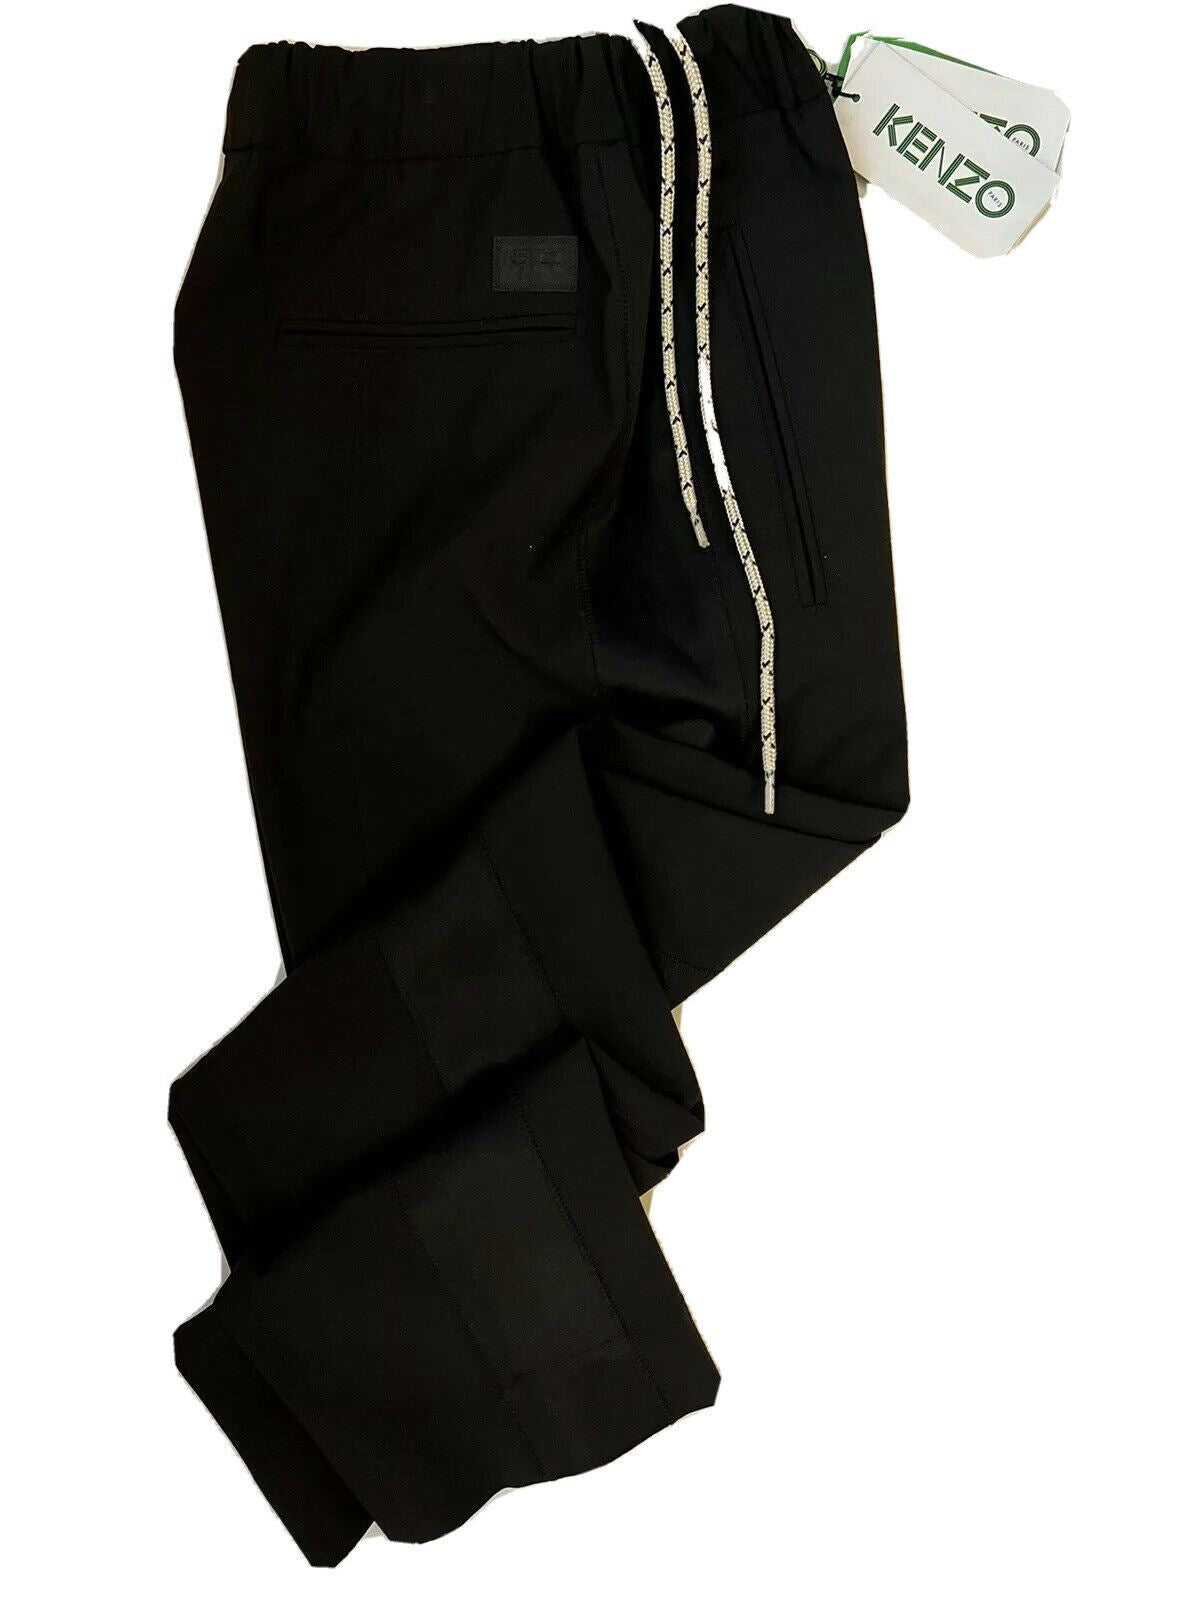 Neu mit Etikett: 370 $ Kenzo Herren-Freizeithose aus festlicher Wolle in Schwarz, Größe 28 US (44 Euro)